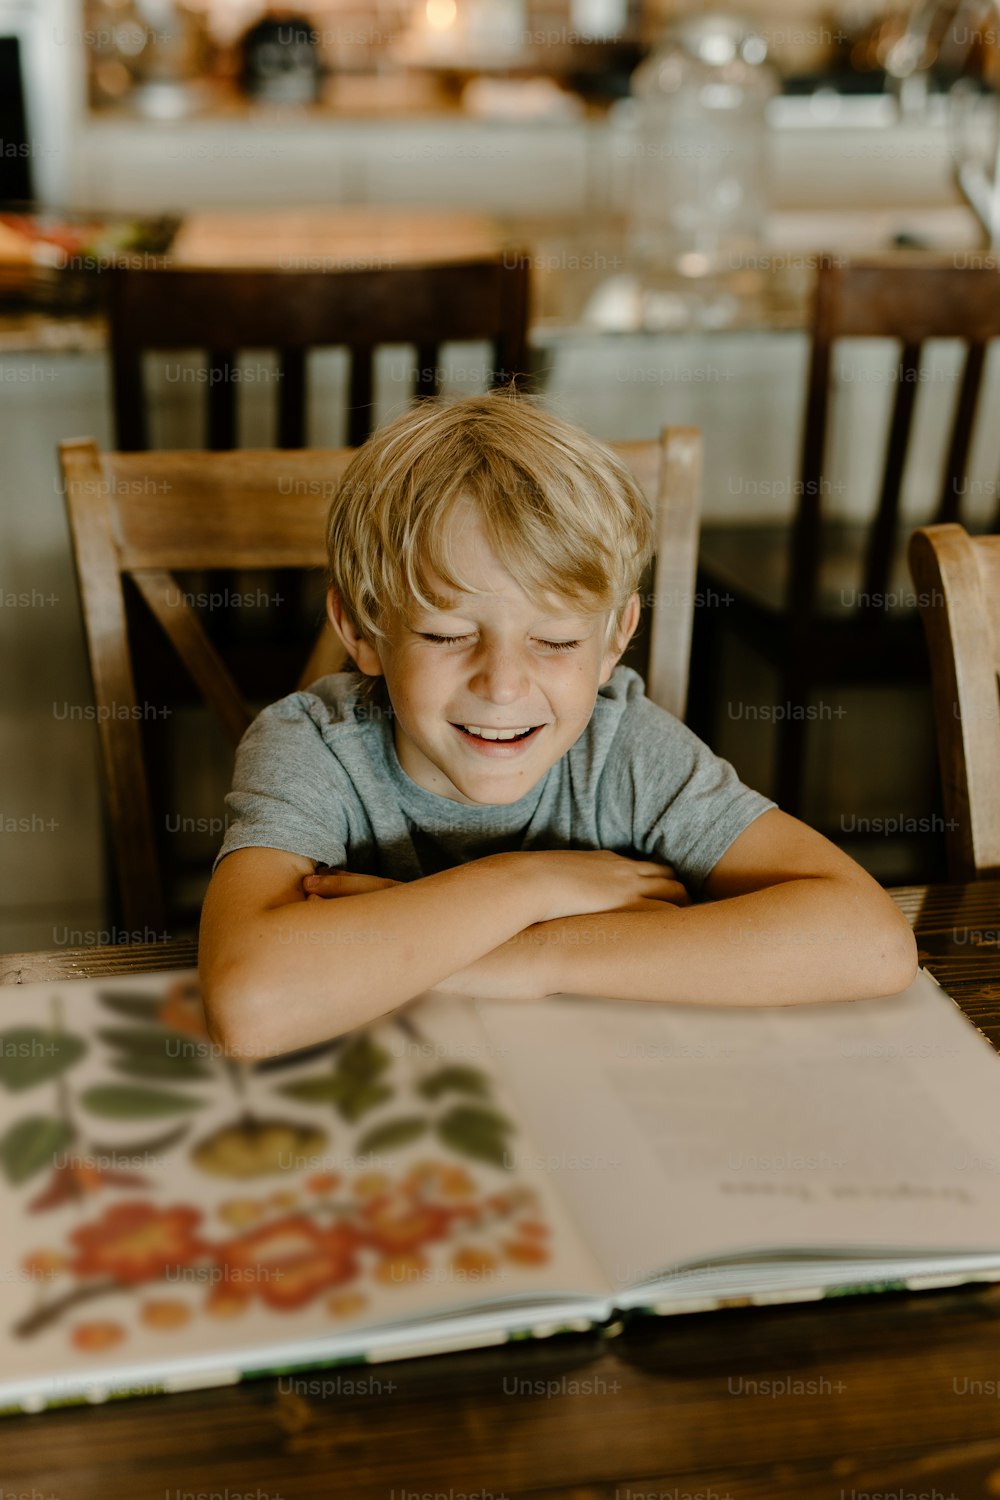 Ein kleiner Junge, der mit einem Buch an einem Tisch sitzt